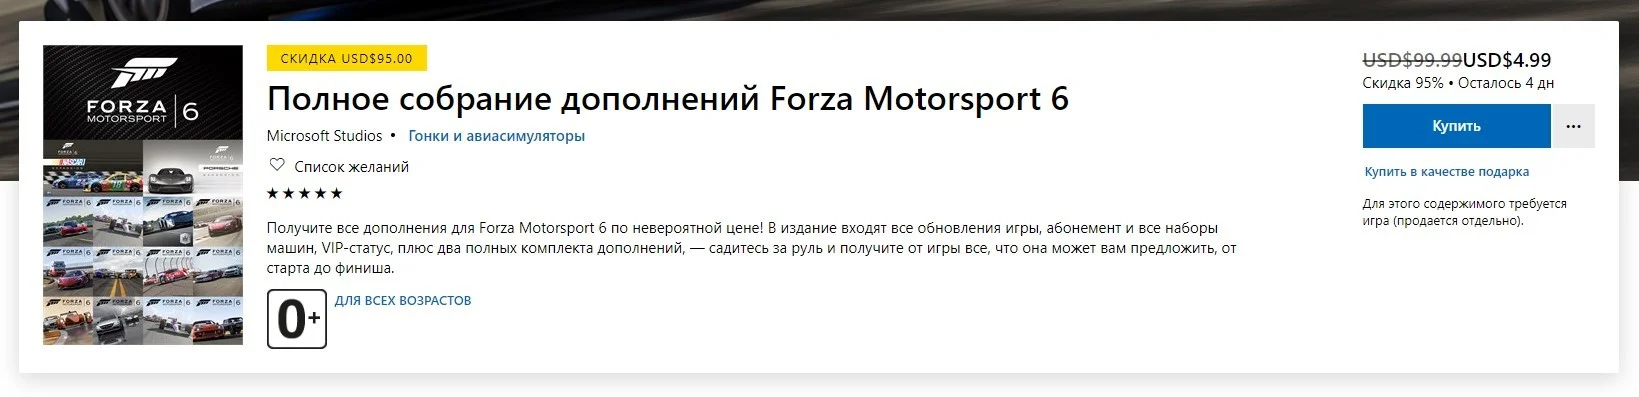 В сентябре Forza Motorsport 6 снимут с продаж — сейчас все DLC на скидке 95% - фото 1